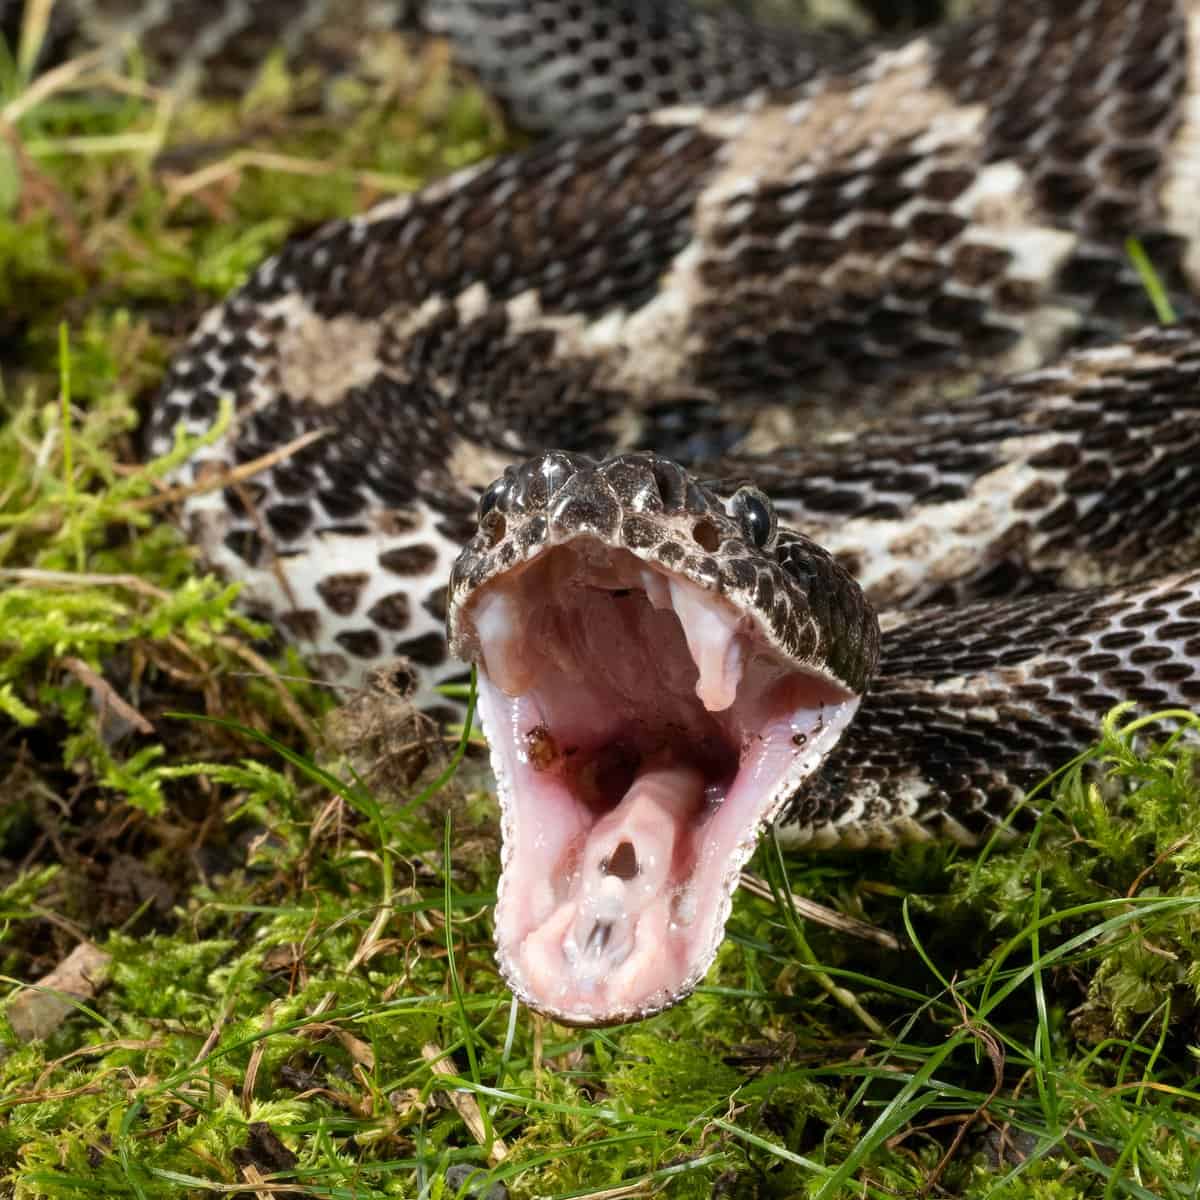 A Timber Rattlesnake striking prey